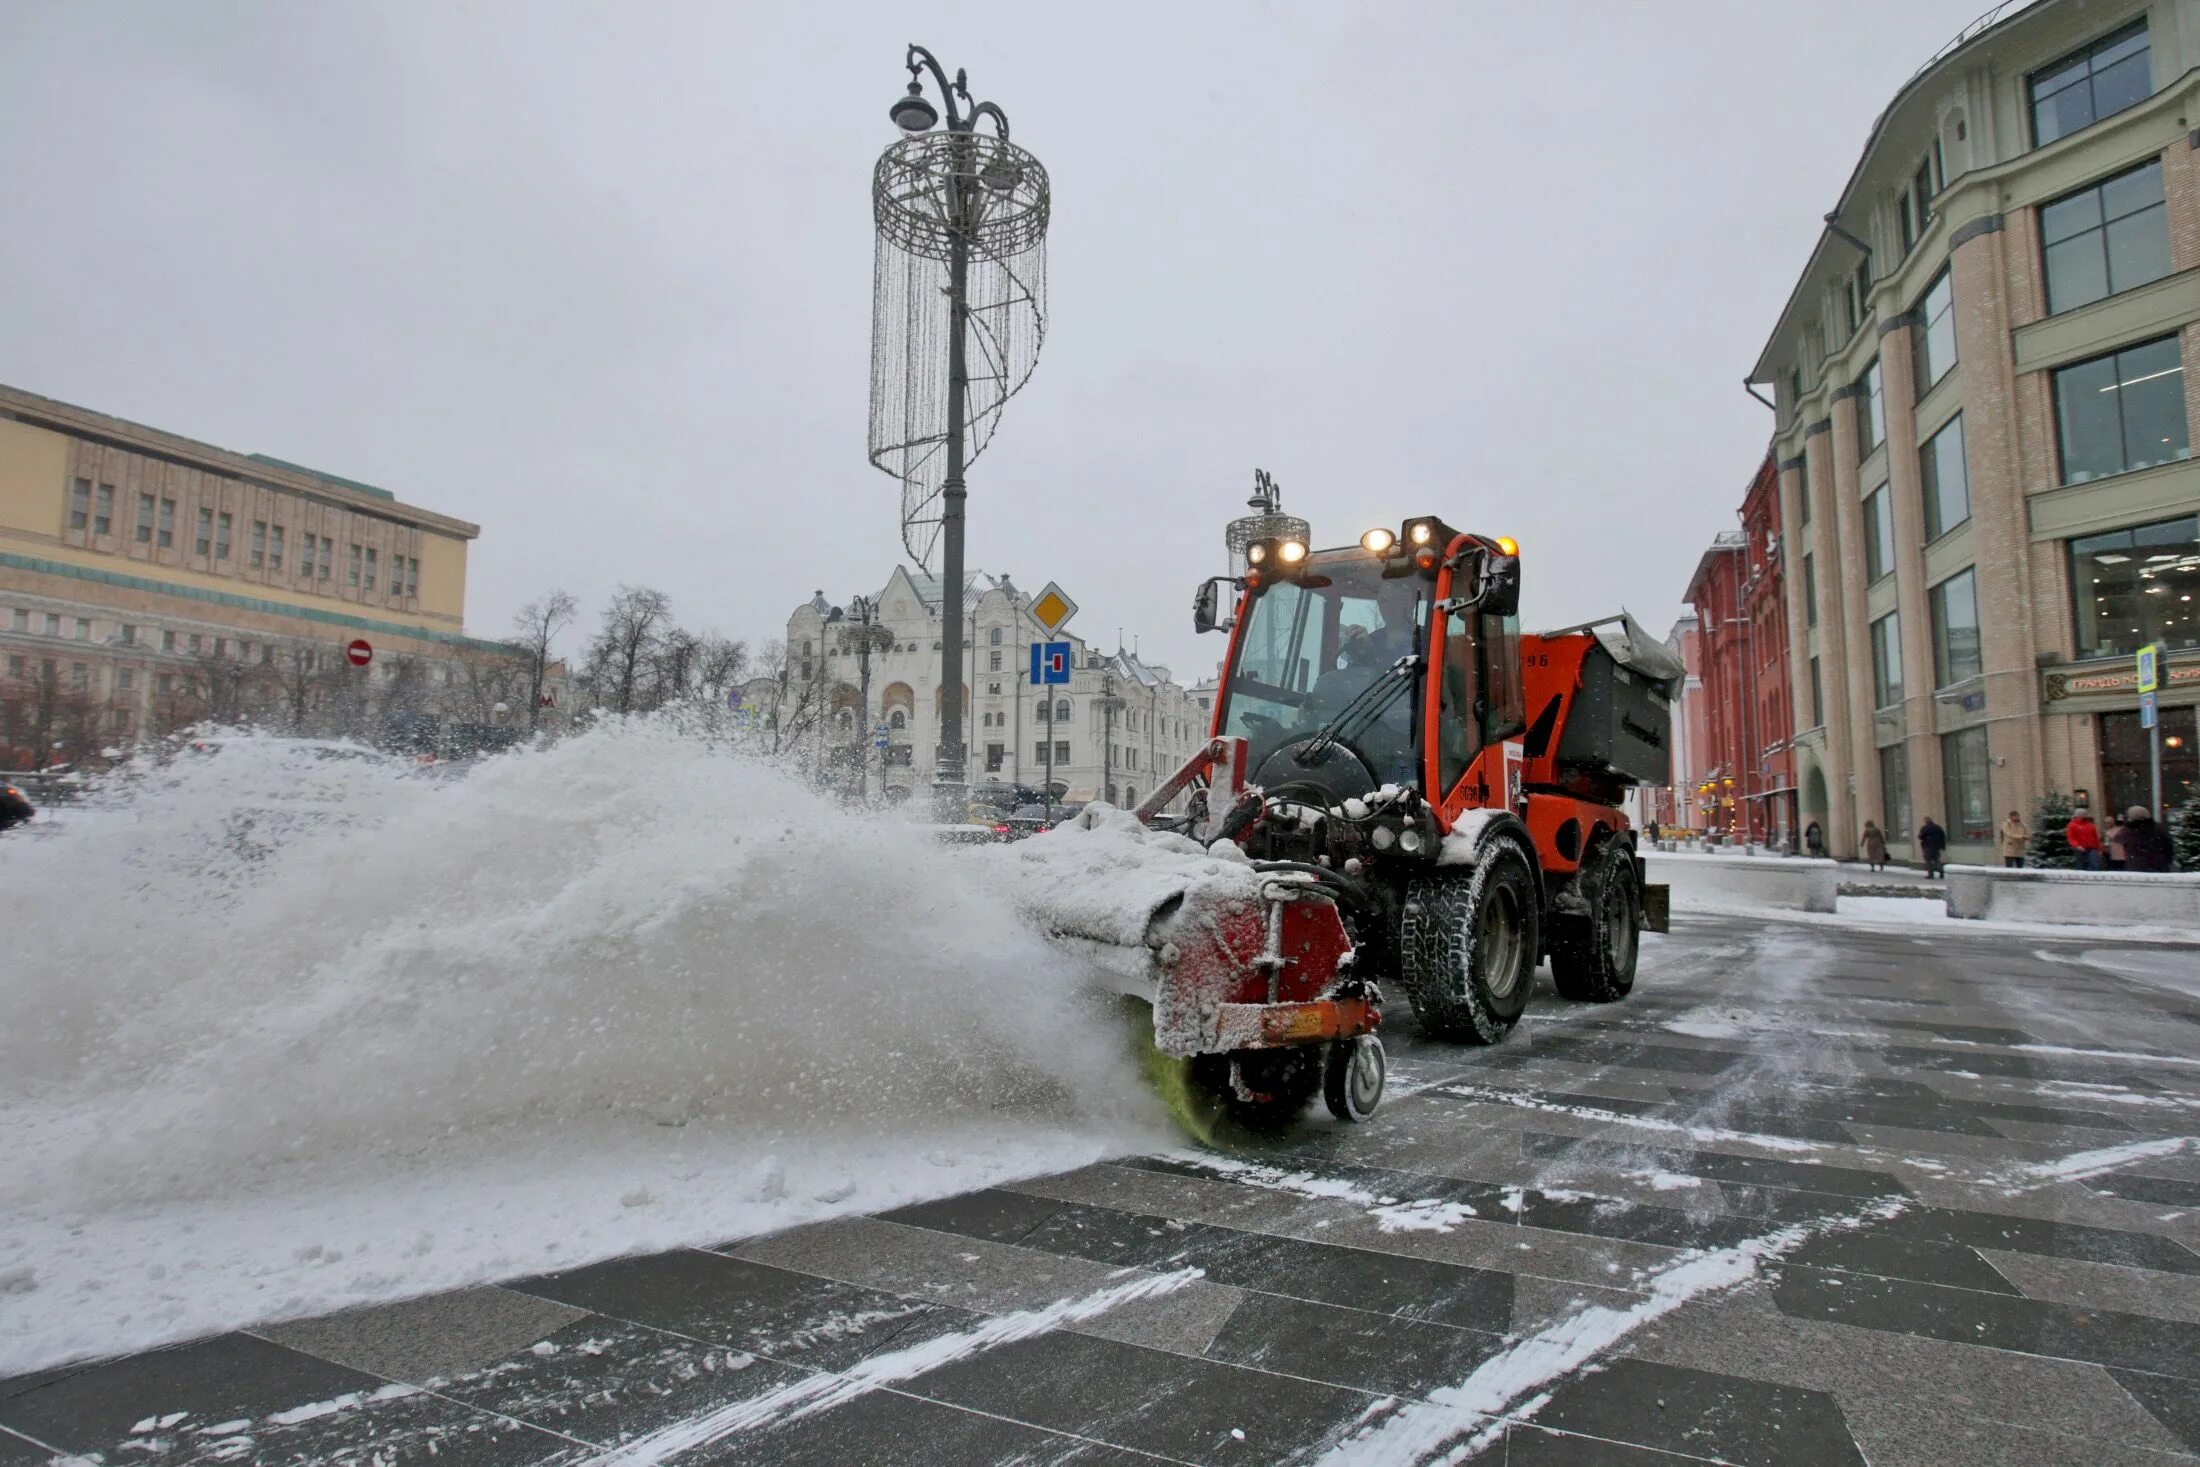 Snowfall на русском. Самые мощные снегопады в Санкт Петербурге. Фото сильных снегопад в Российской Федерации.